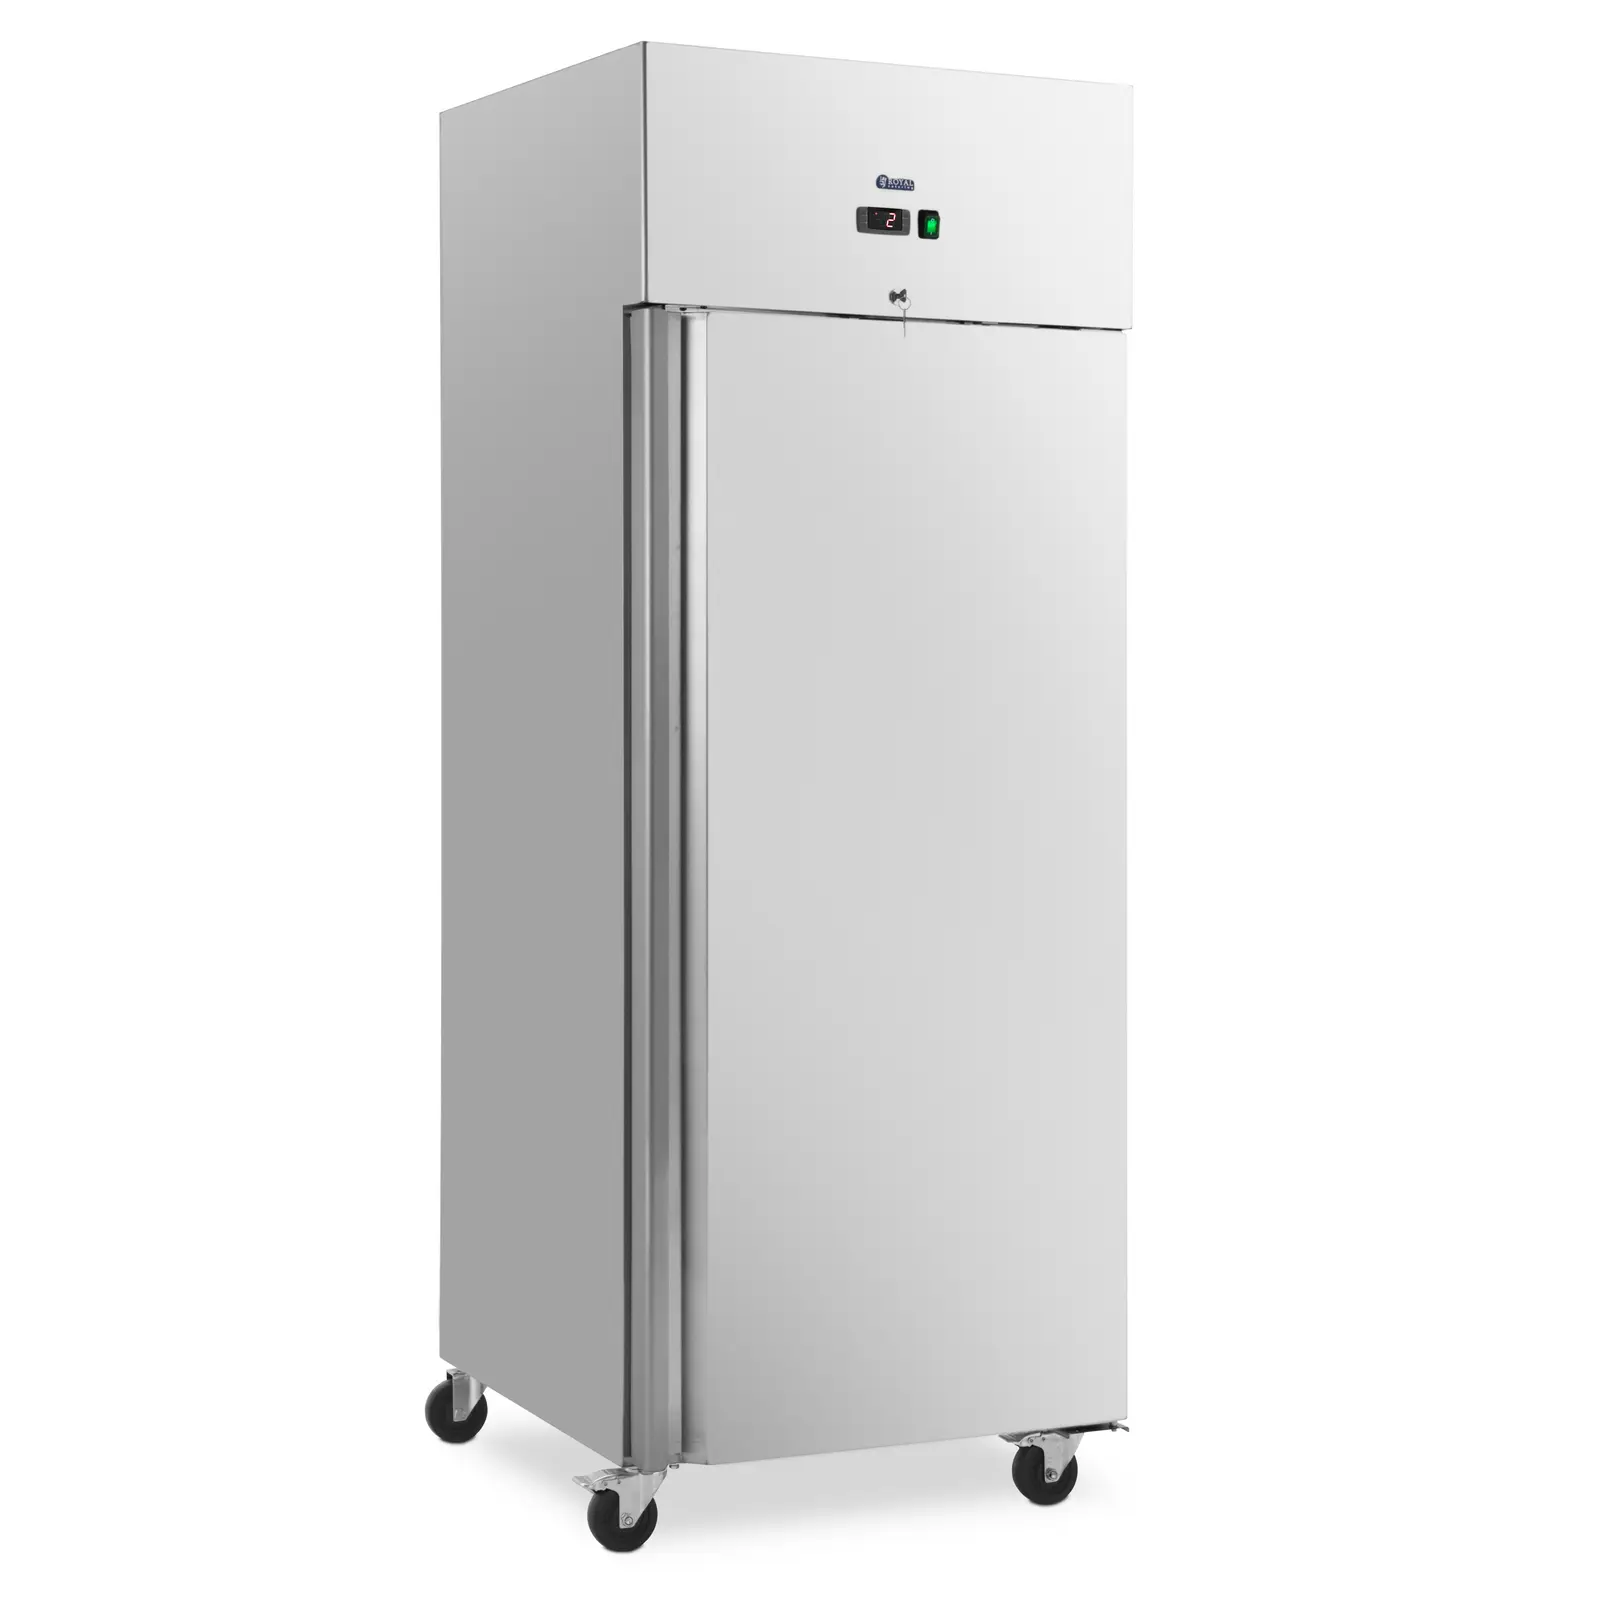 Ipari hűtőszekrény - 485 l - rozsdamentes acél - 1 ajtó - 4 görgő - zárható - Royal Catering